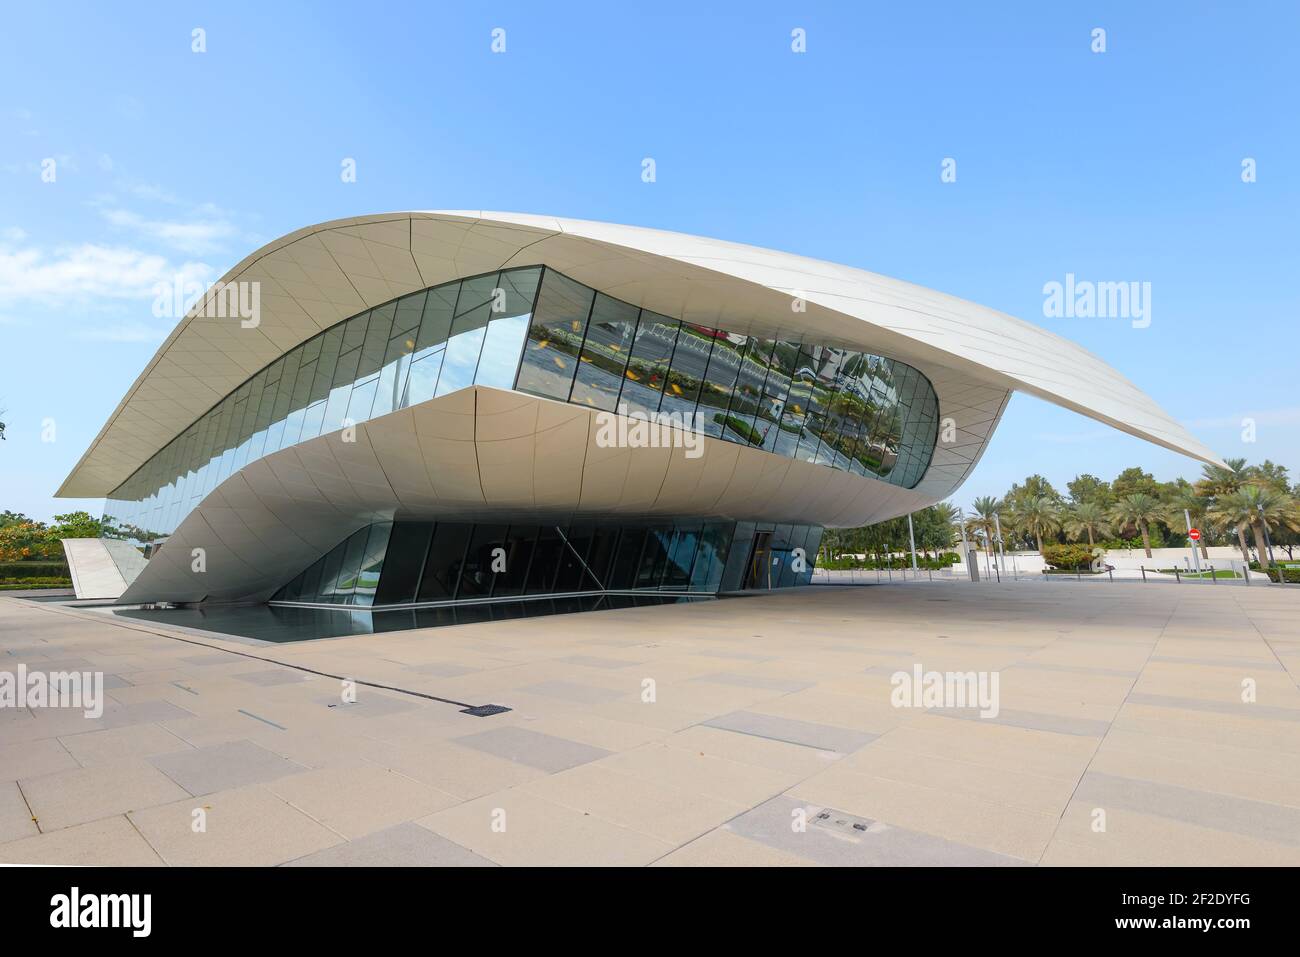 Museo Etihad en Dubai, Emiratos Árabes Unidos, la antigua Casa de la Unión. Diseño moderno cultural Etihad Museum con patrimonio de los Emiratos Árabes Unidos. Foto de stock